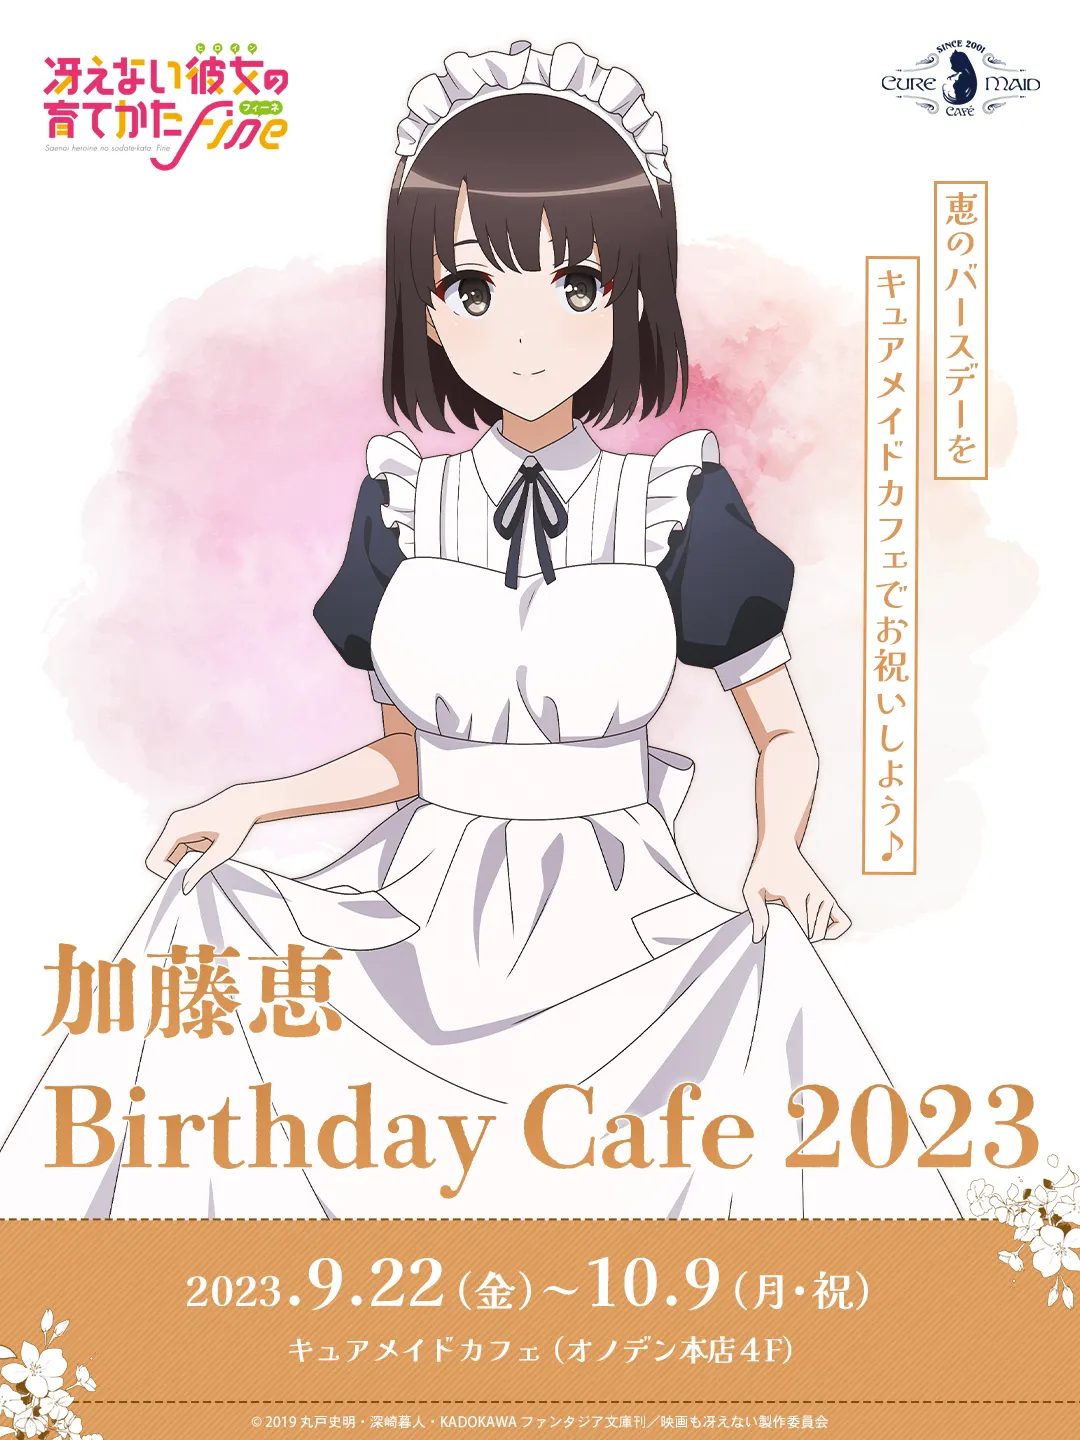 冴えない彼女の育てかた」 加藤恵 Birthday Cafe 2023 | CURE MAID